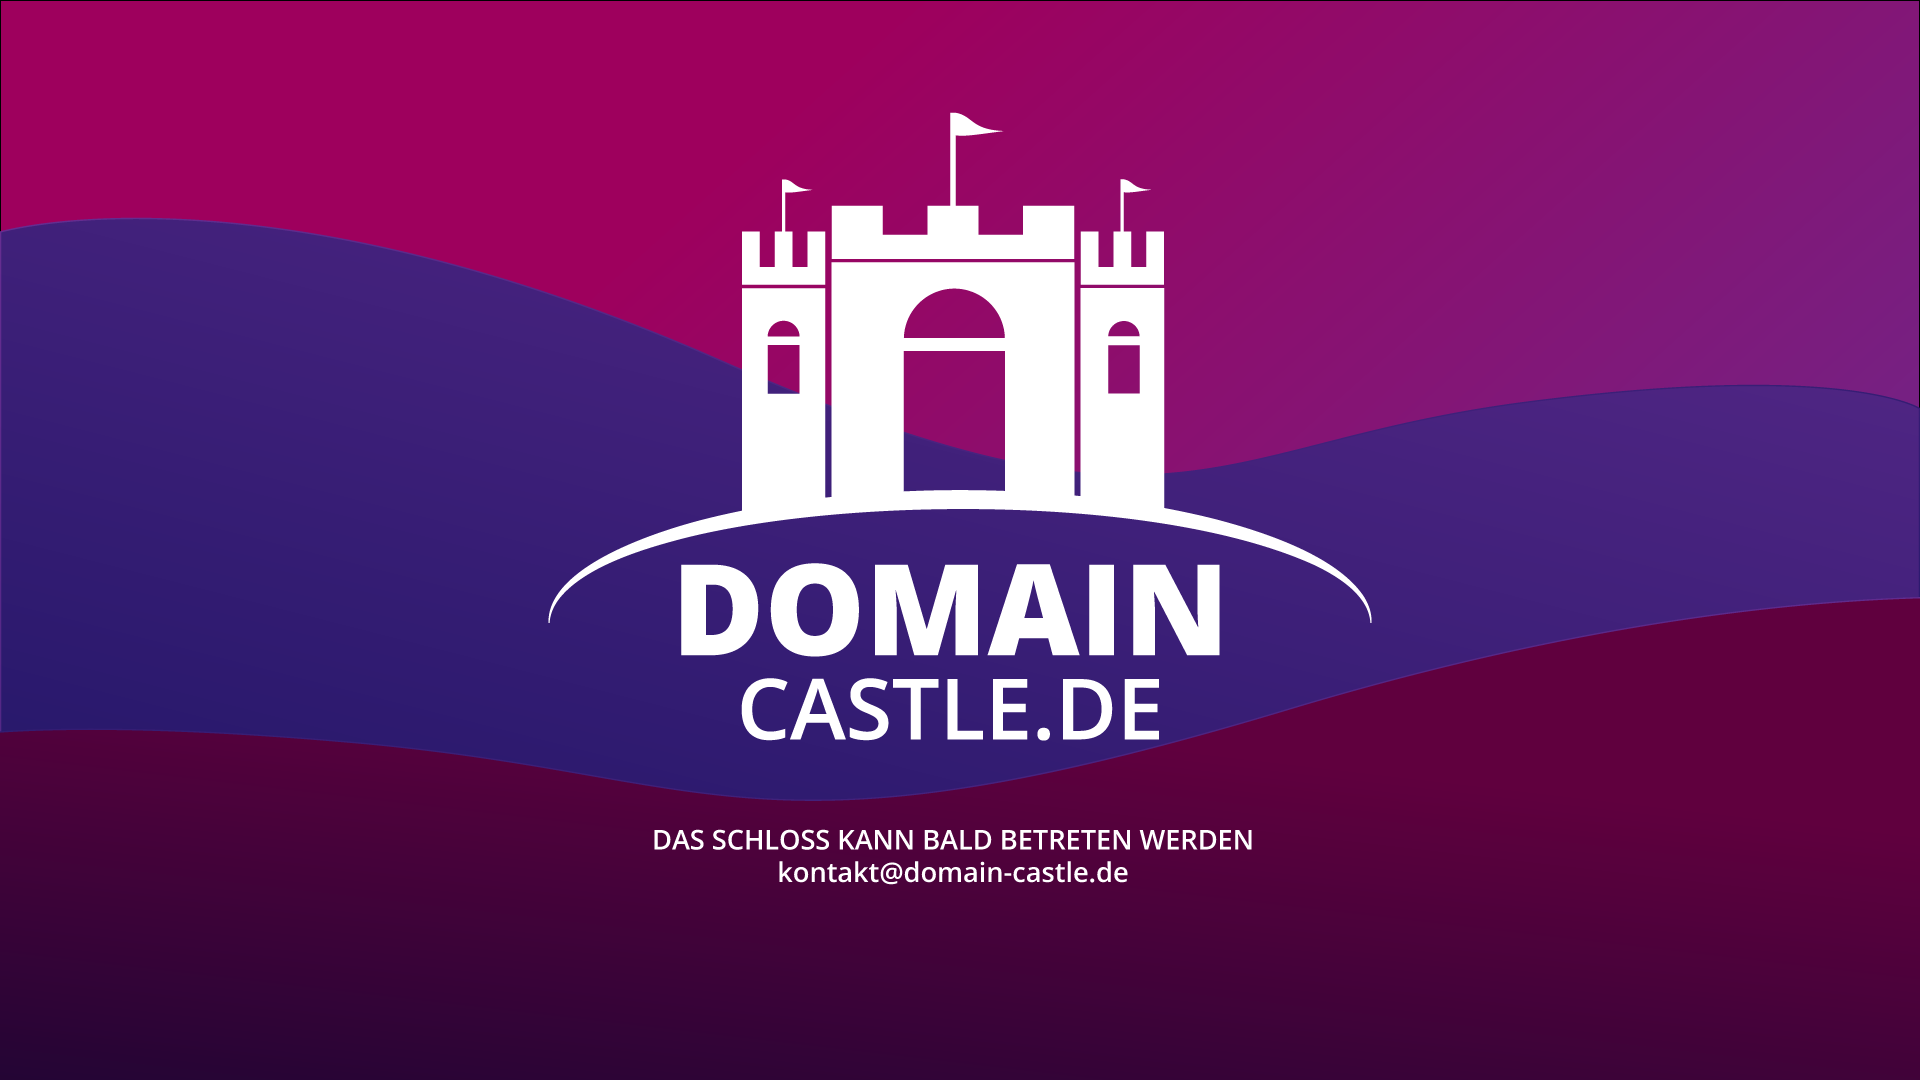 (c) Domain-castle.de